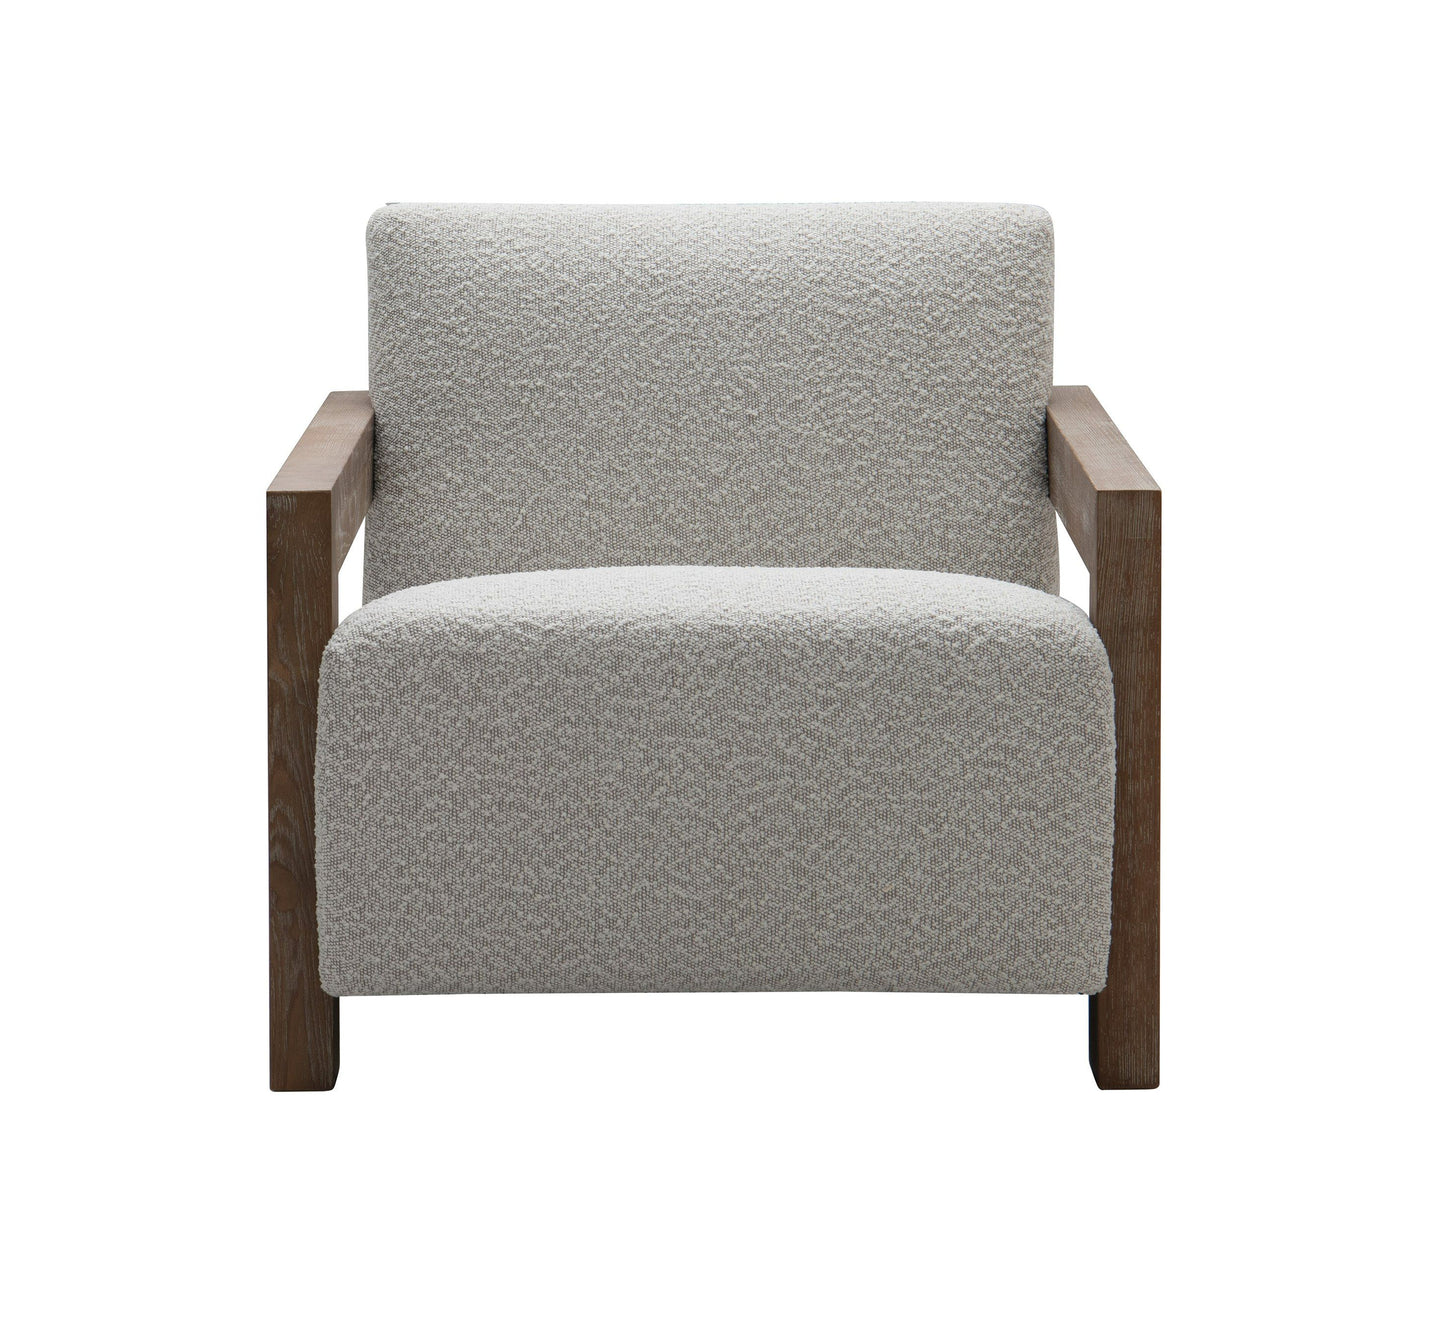 Modrest Rosen - Modern Beige Fabric + Grey Oak Accent Chair